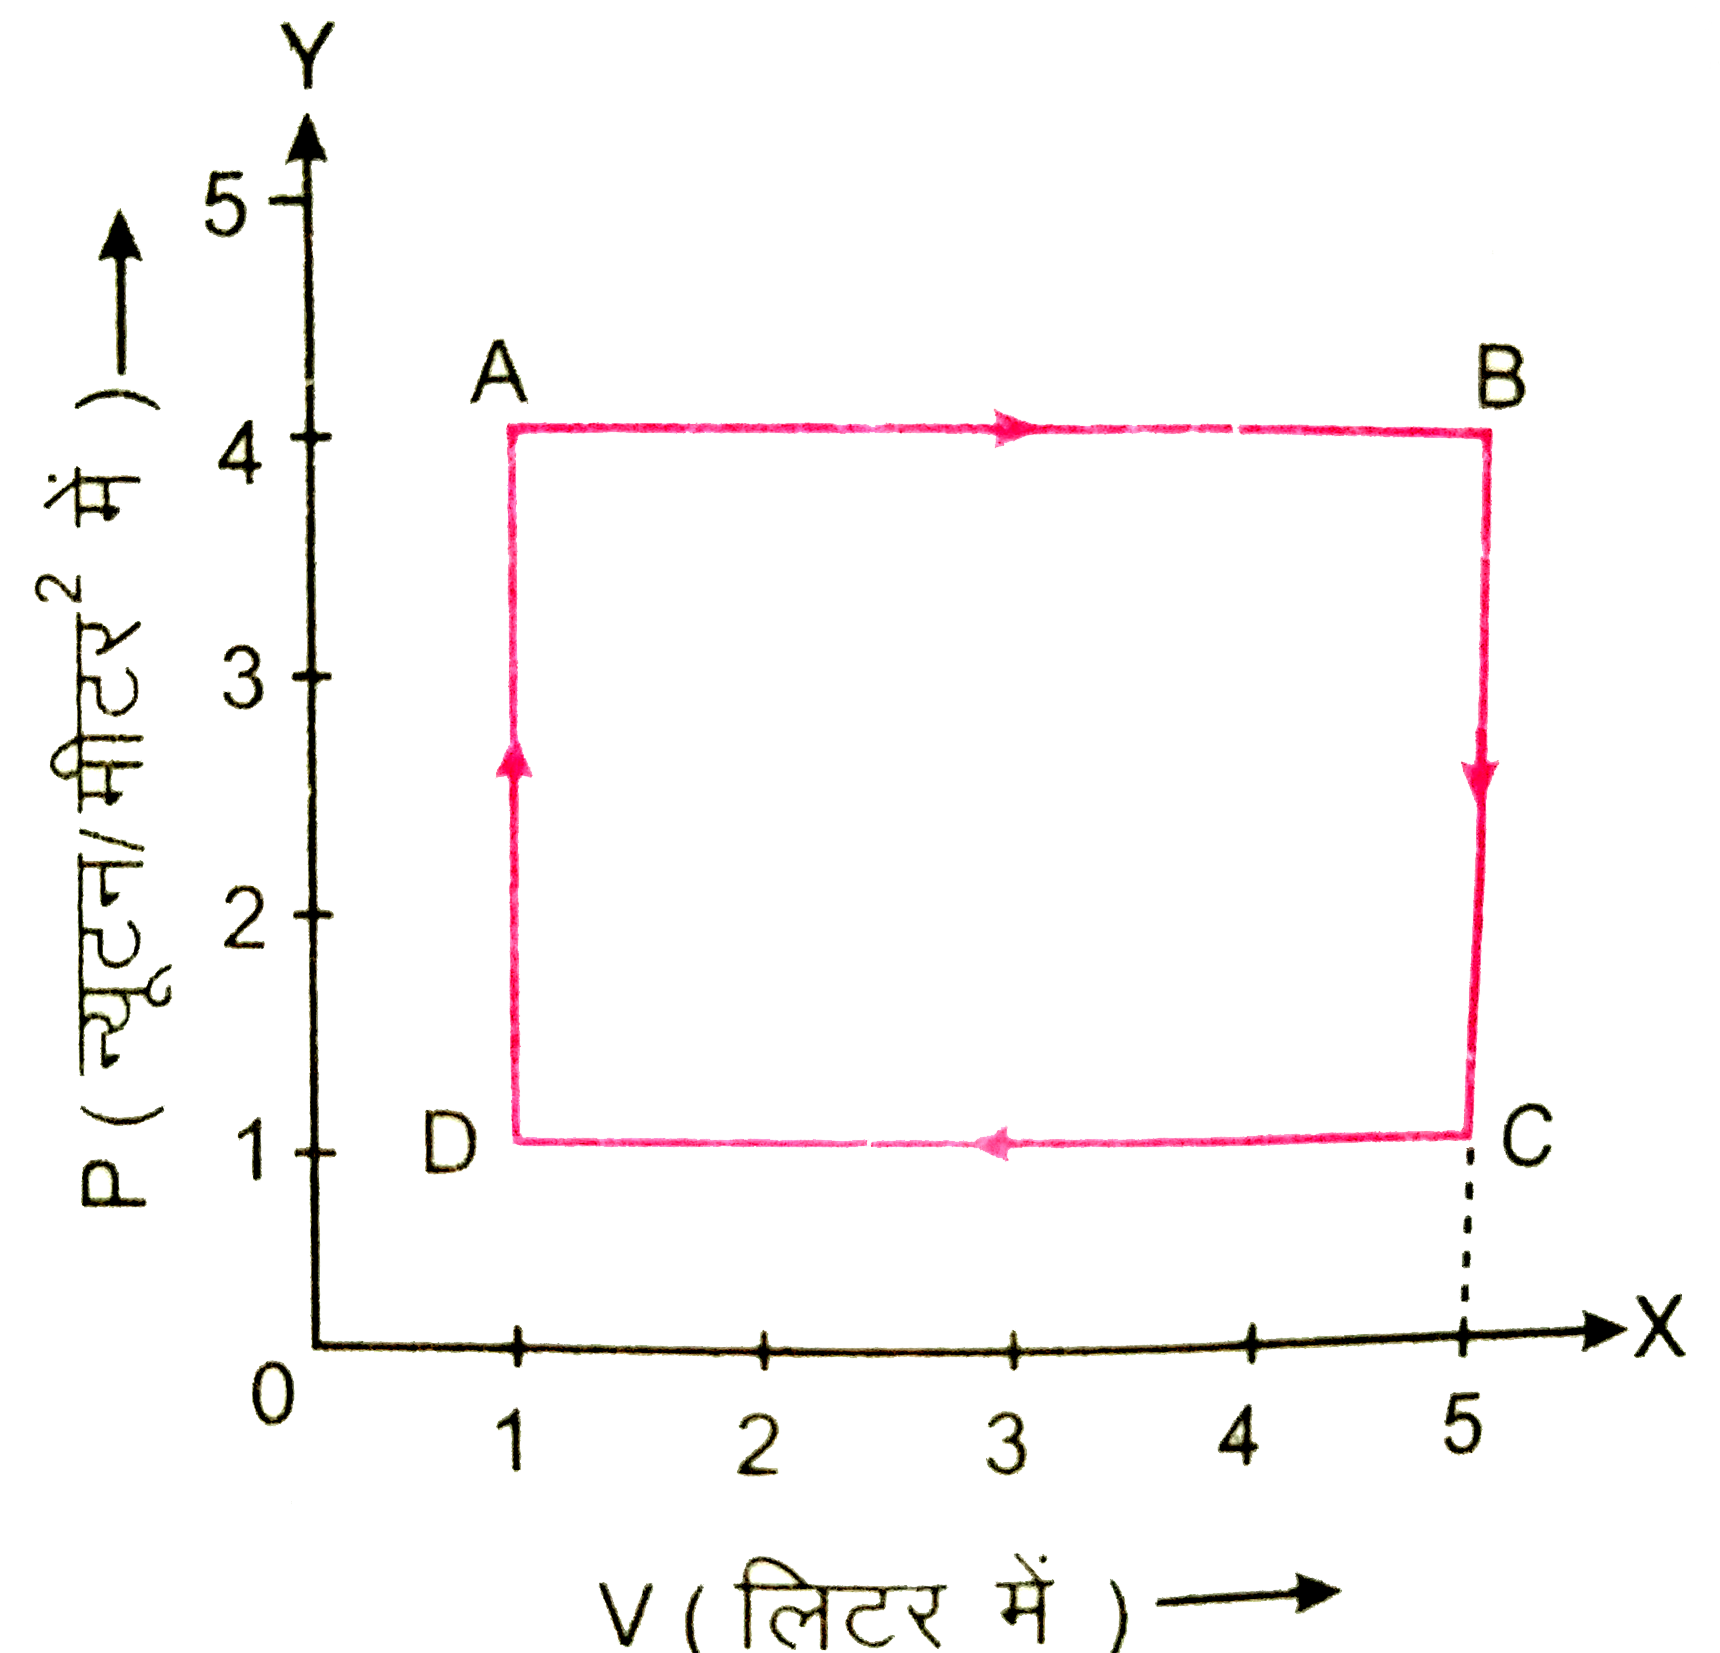 चित्र  में किसी गैस की अवस्था परिवर्तन के लिए P-V आरेख प्रदर्शित है। गणना कीजिए। पूरे चक्र ABCDA में किया गया नेट कार्य |